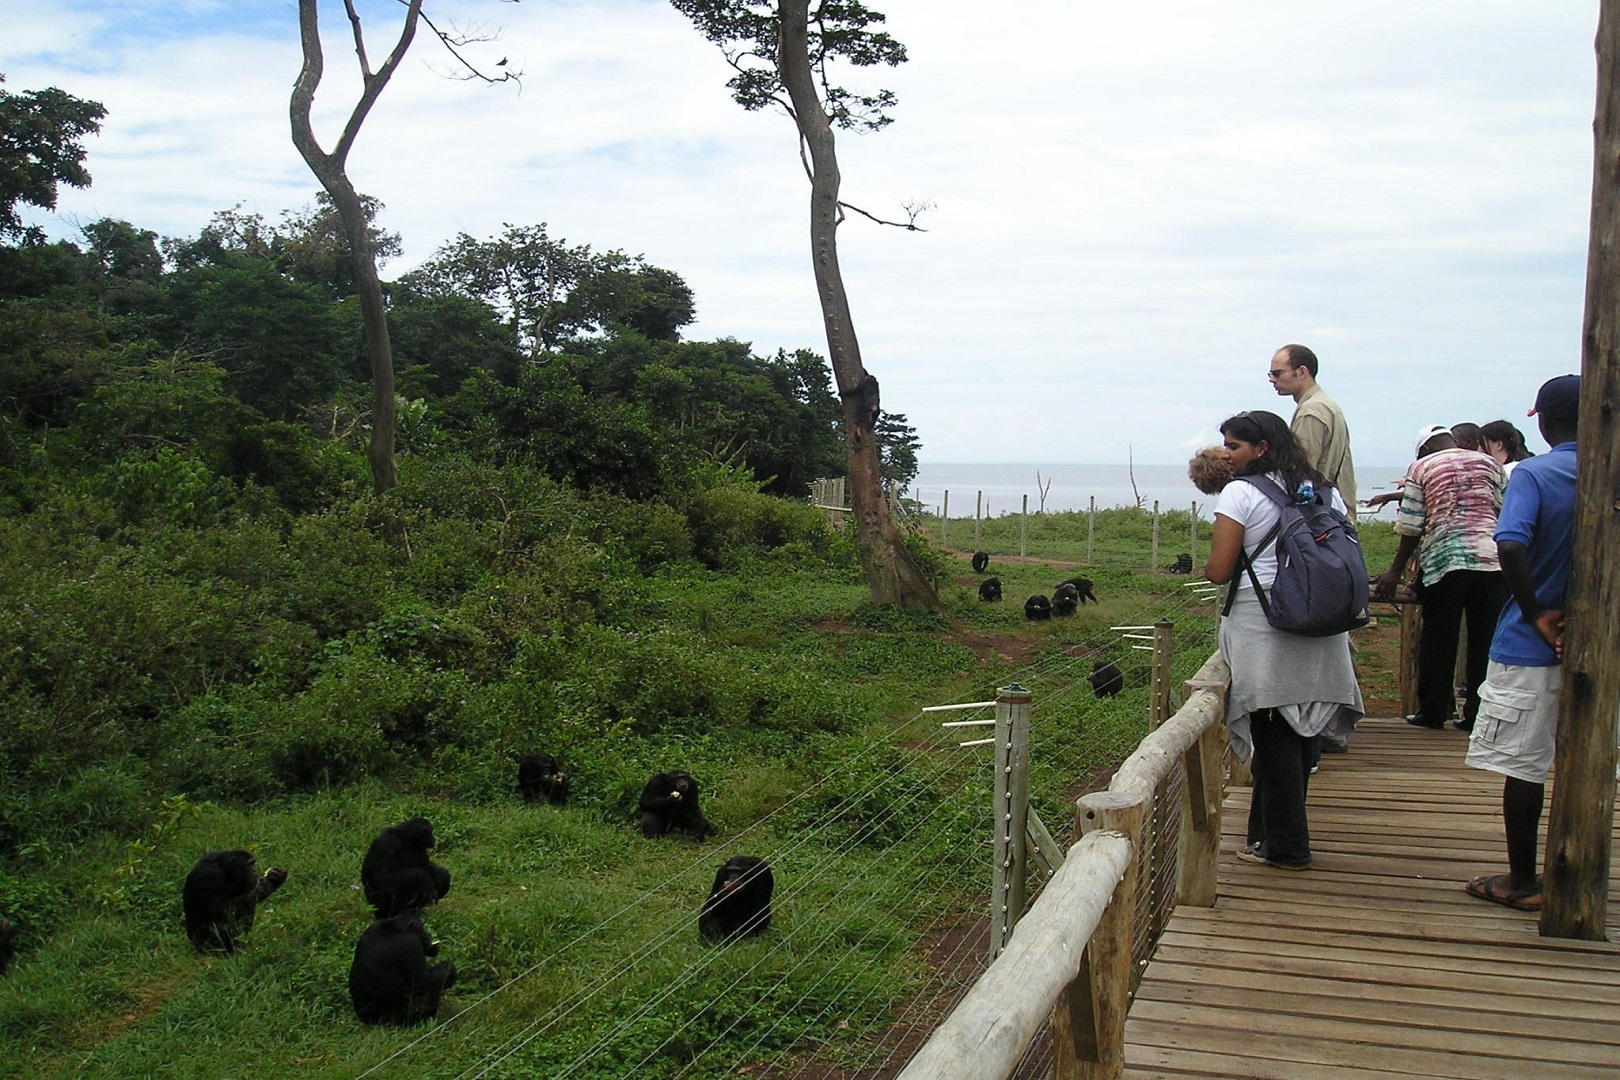 Chimpanzee viewing at Ngamba Island Chimpanzee Sanctuary